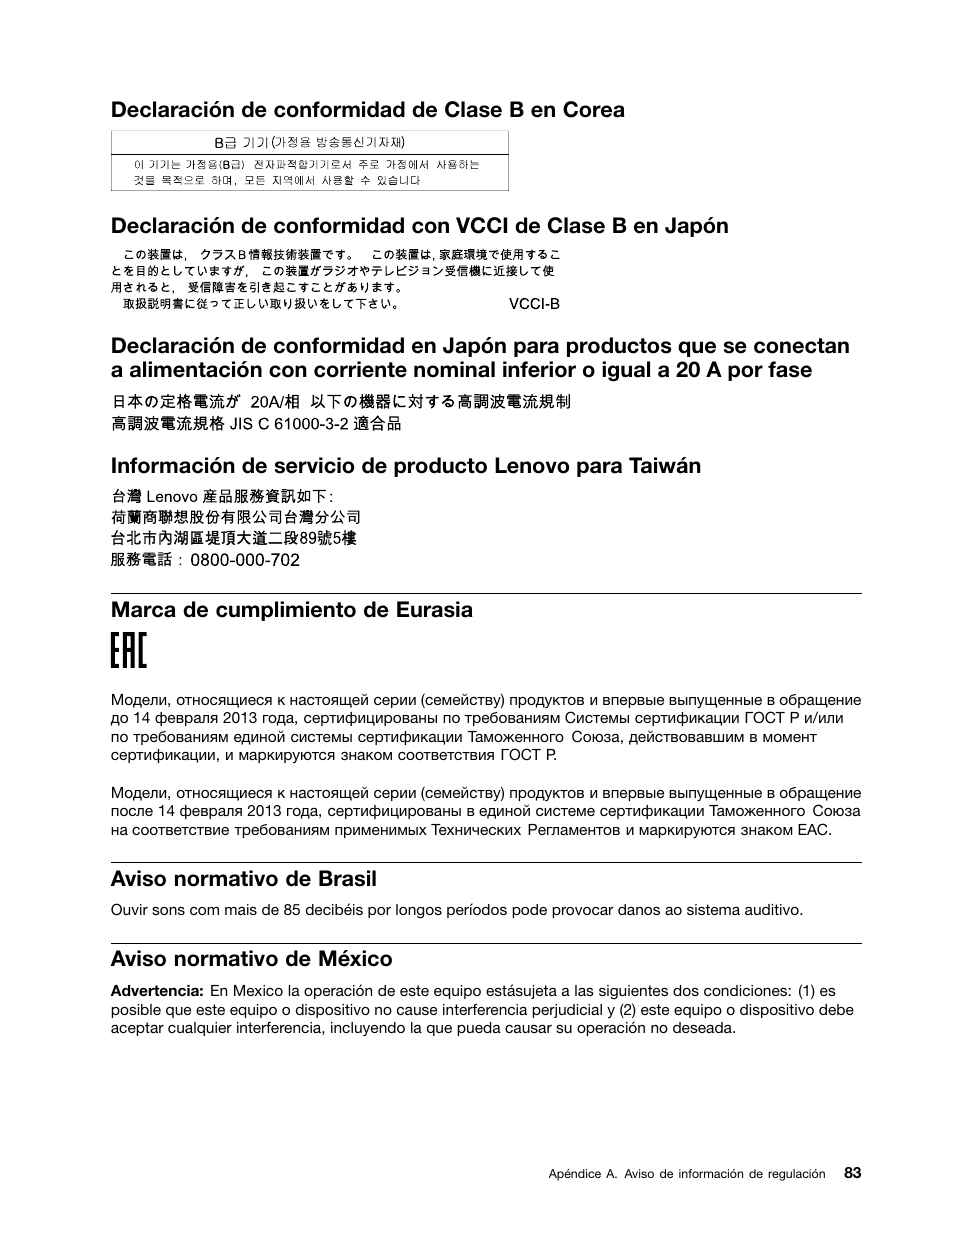 Declaración de conformidad de clase b en corea, Marca de cumplimiento de  eurasia, Aviso normativo de brasil | Lenovo ThinkPad 10 Manual del usuario  | Página 91 / 102 | Original